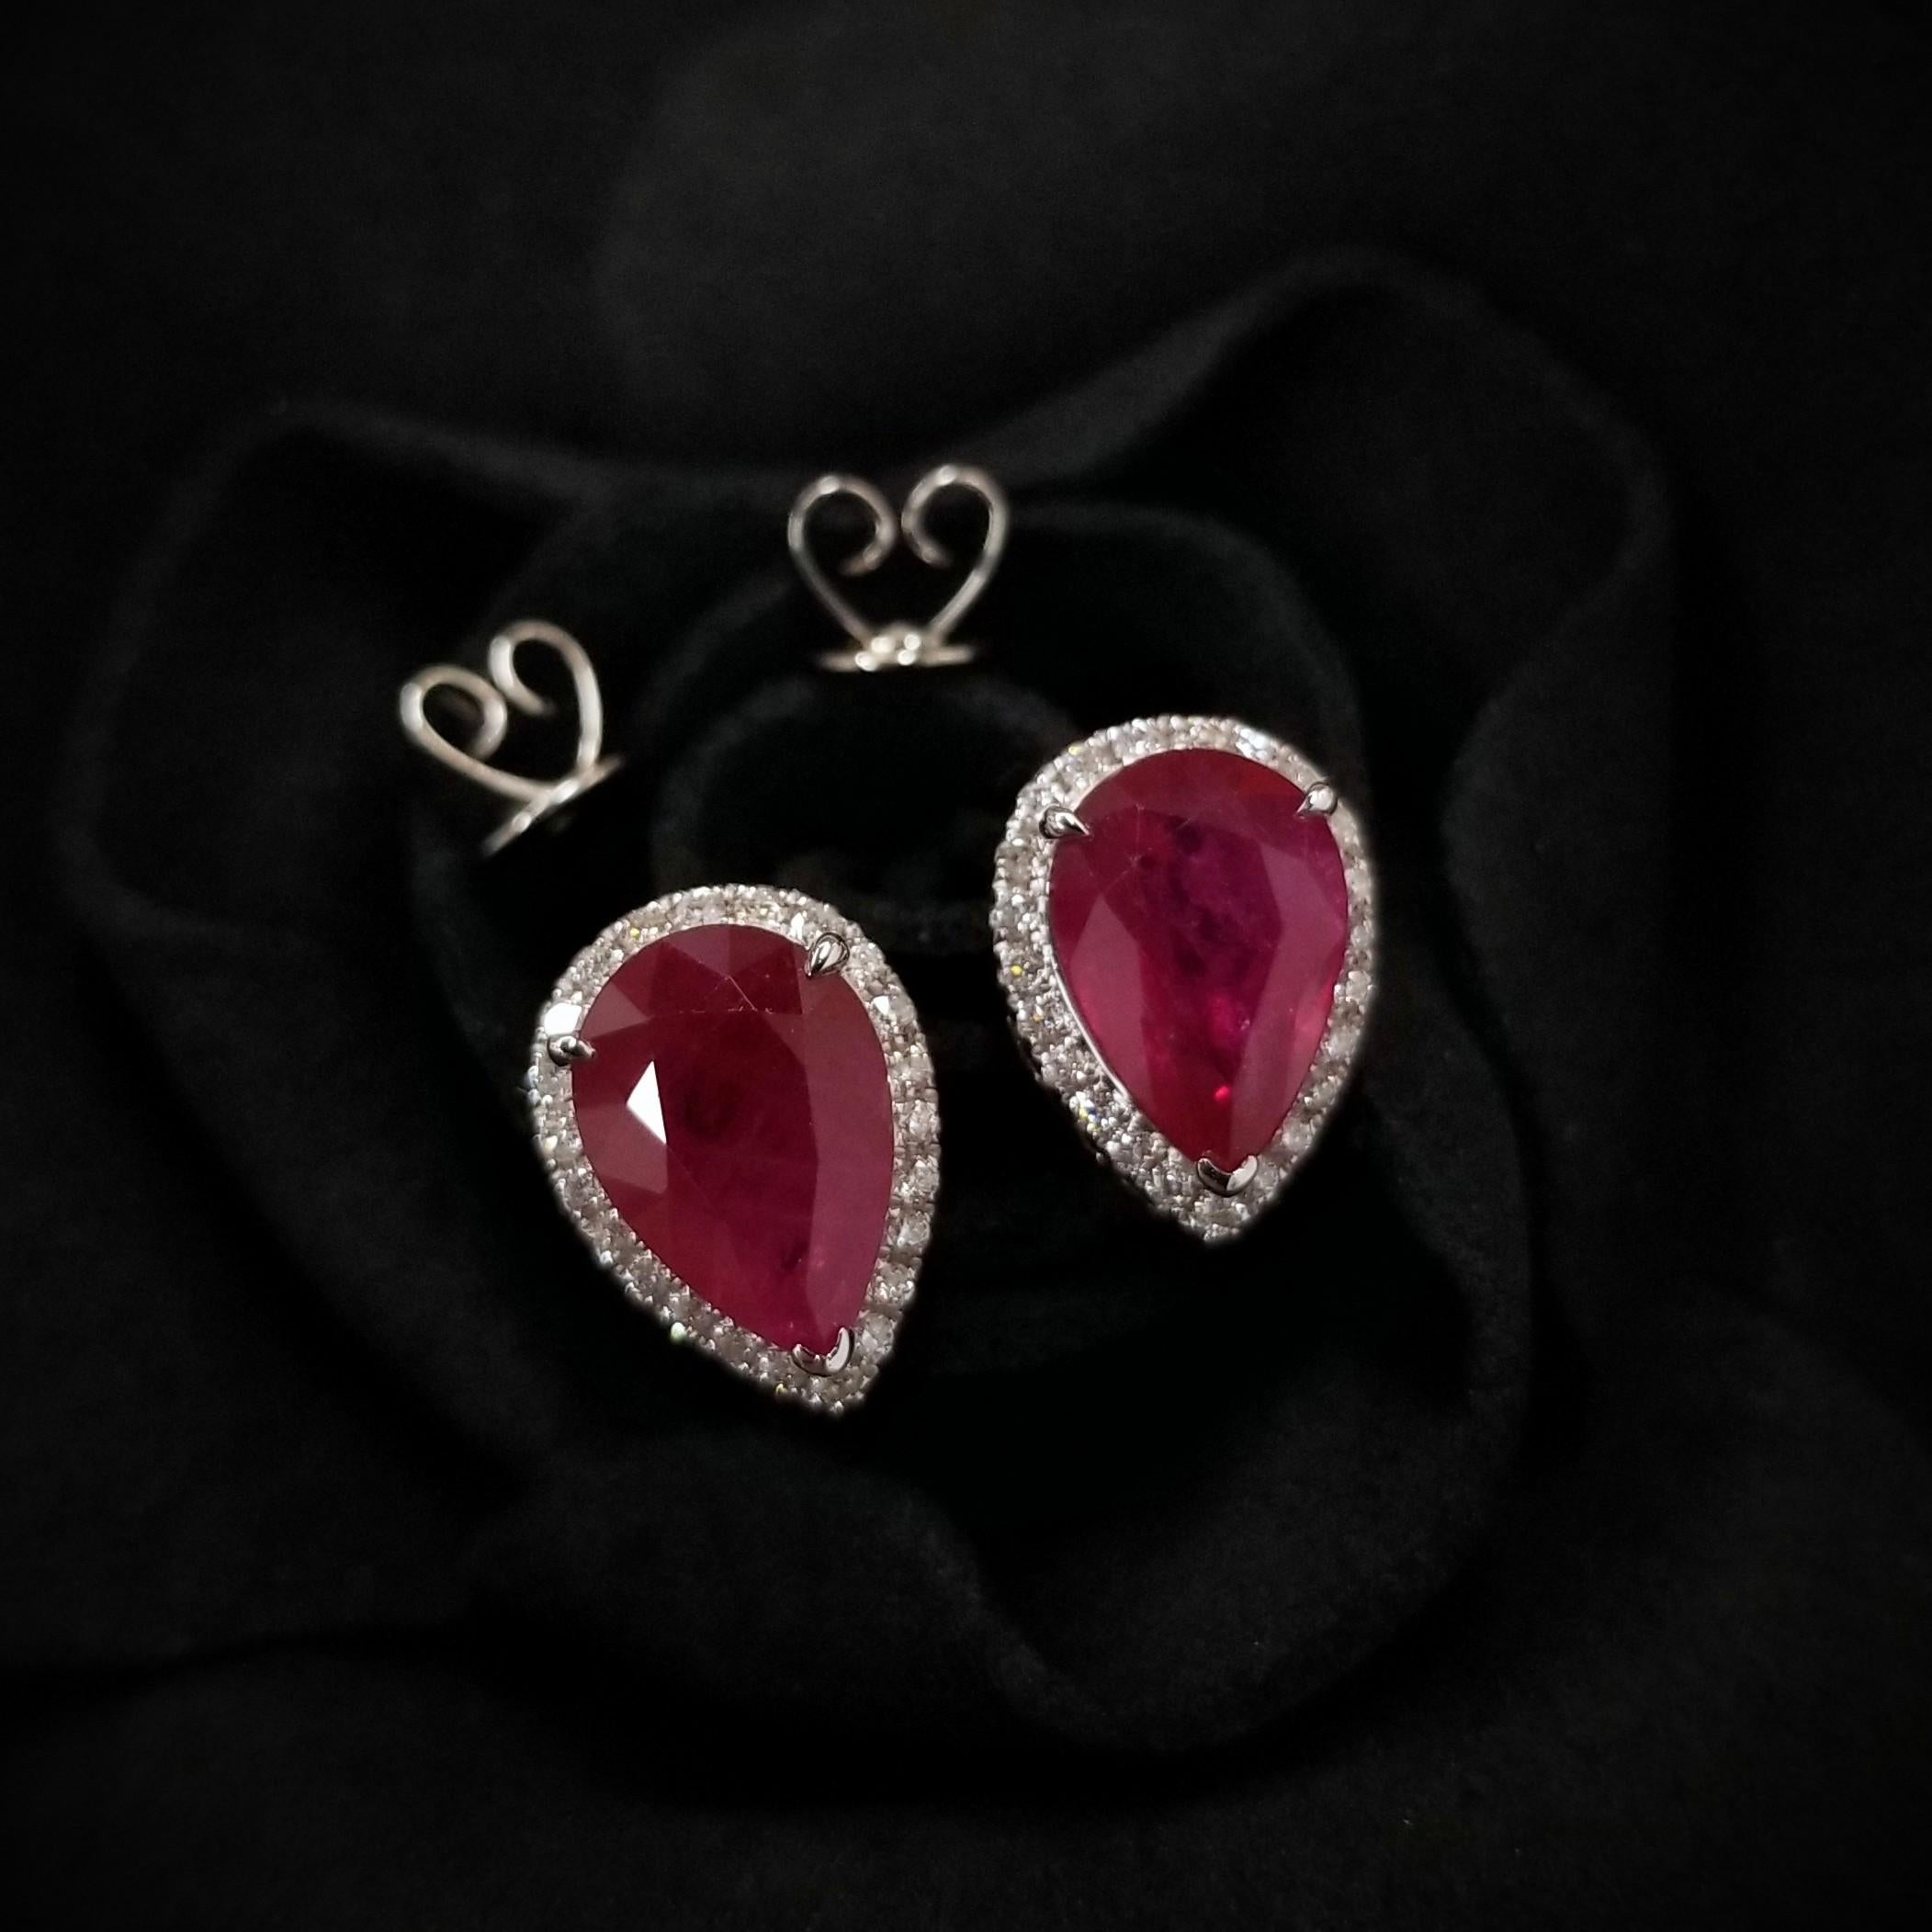 Modern IGI Certified 4.10 Carat Ruby & 0.20 Carat Diamond Earrings in 18K White Gold For Sale